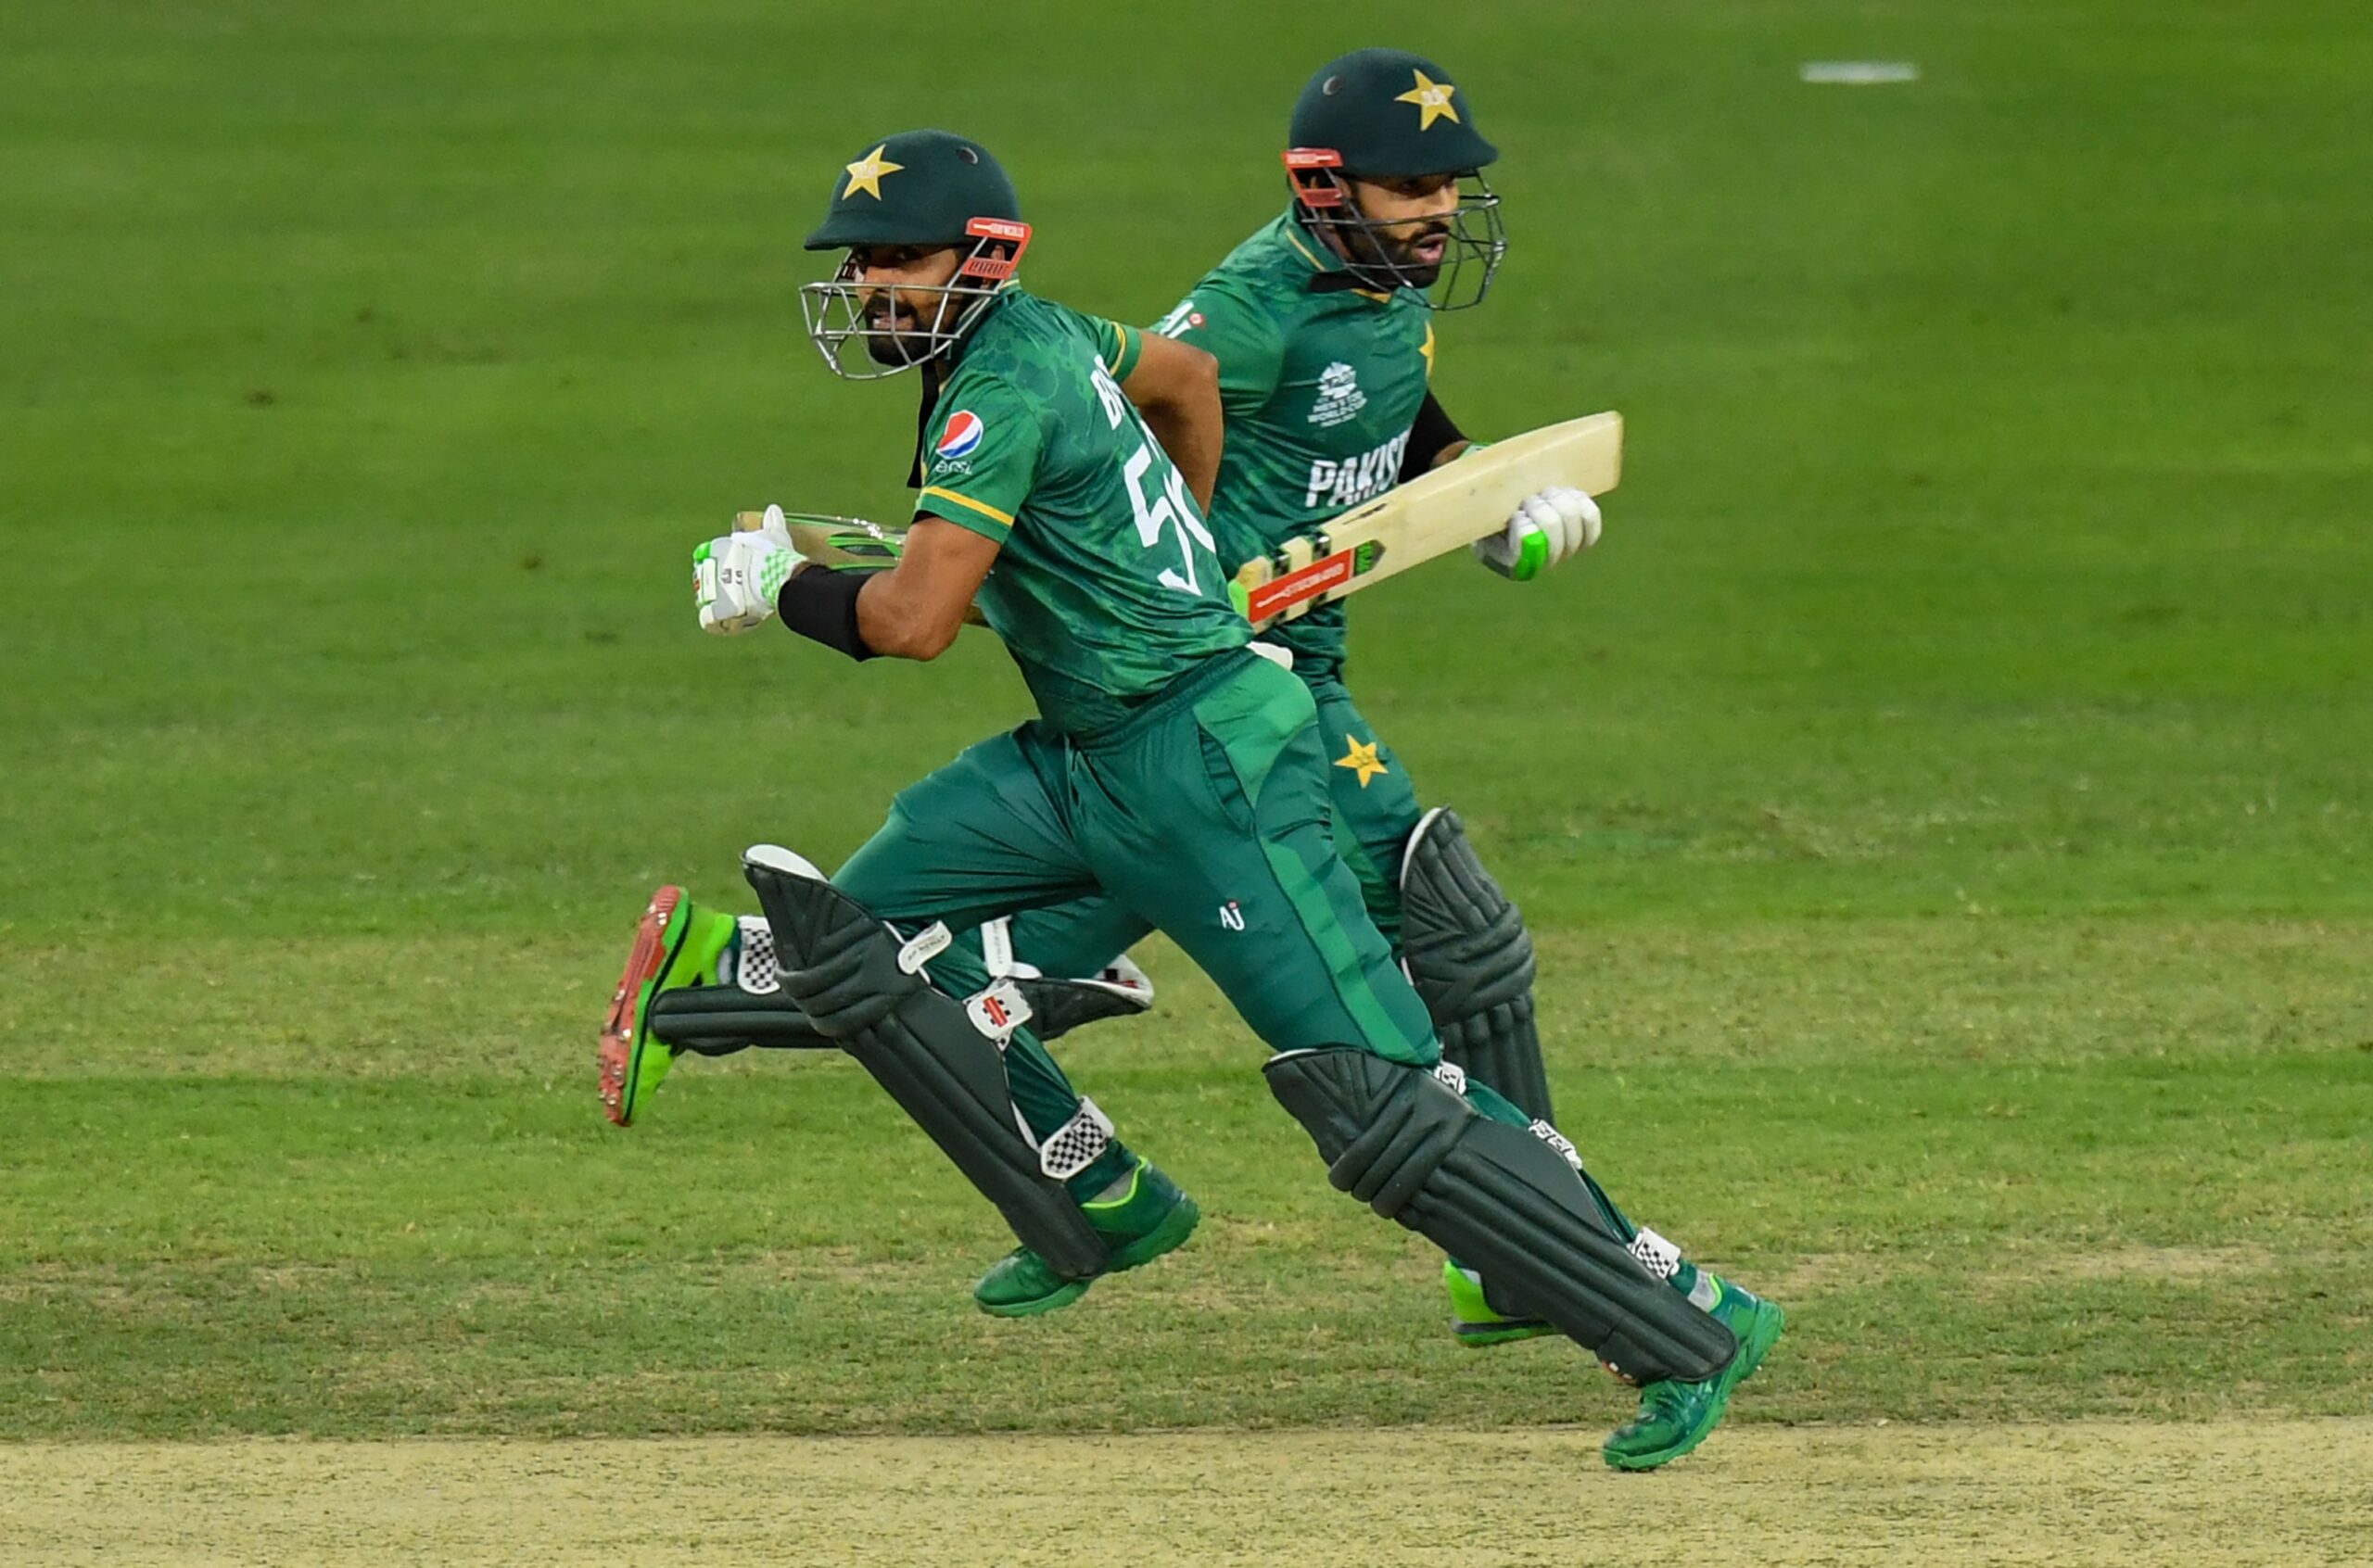 ICC T20 WORLD CUP 2021: फिर से पाकिस्तान में फूटेंगे टीवी स्क्रीन, रोमांचक मैच में ऑस्ट्रेलिया ने हरा फाइनल में बनाई जगह 4